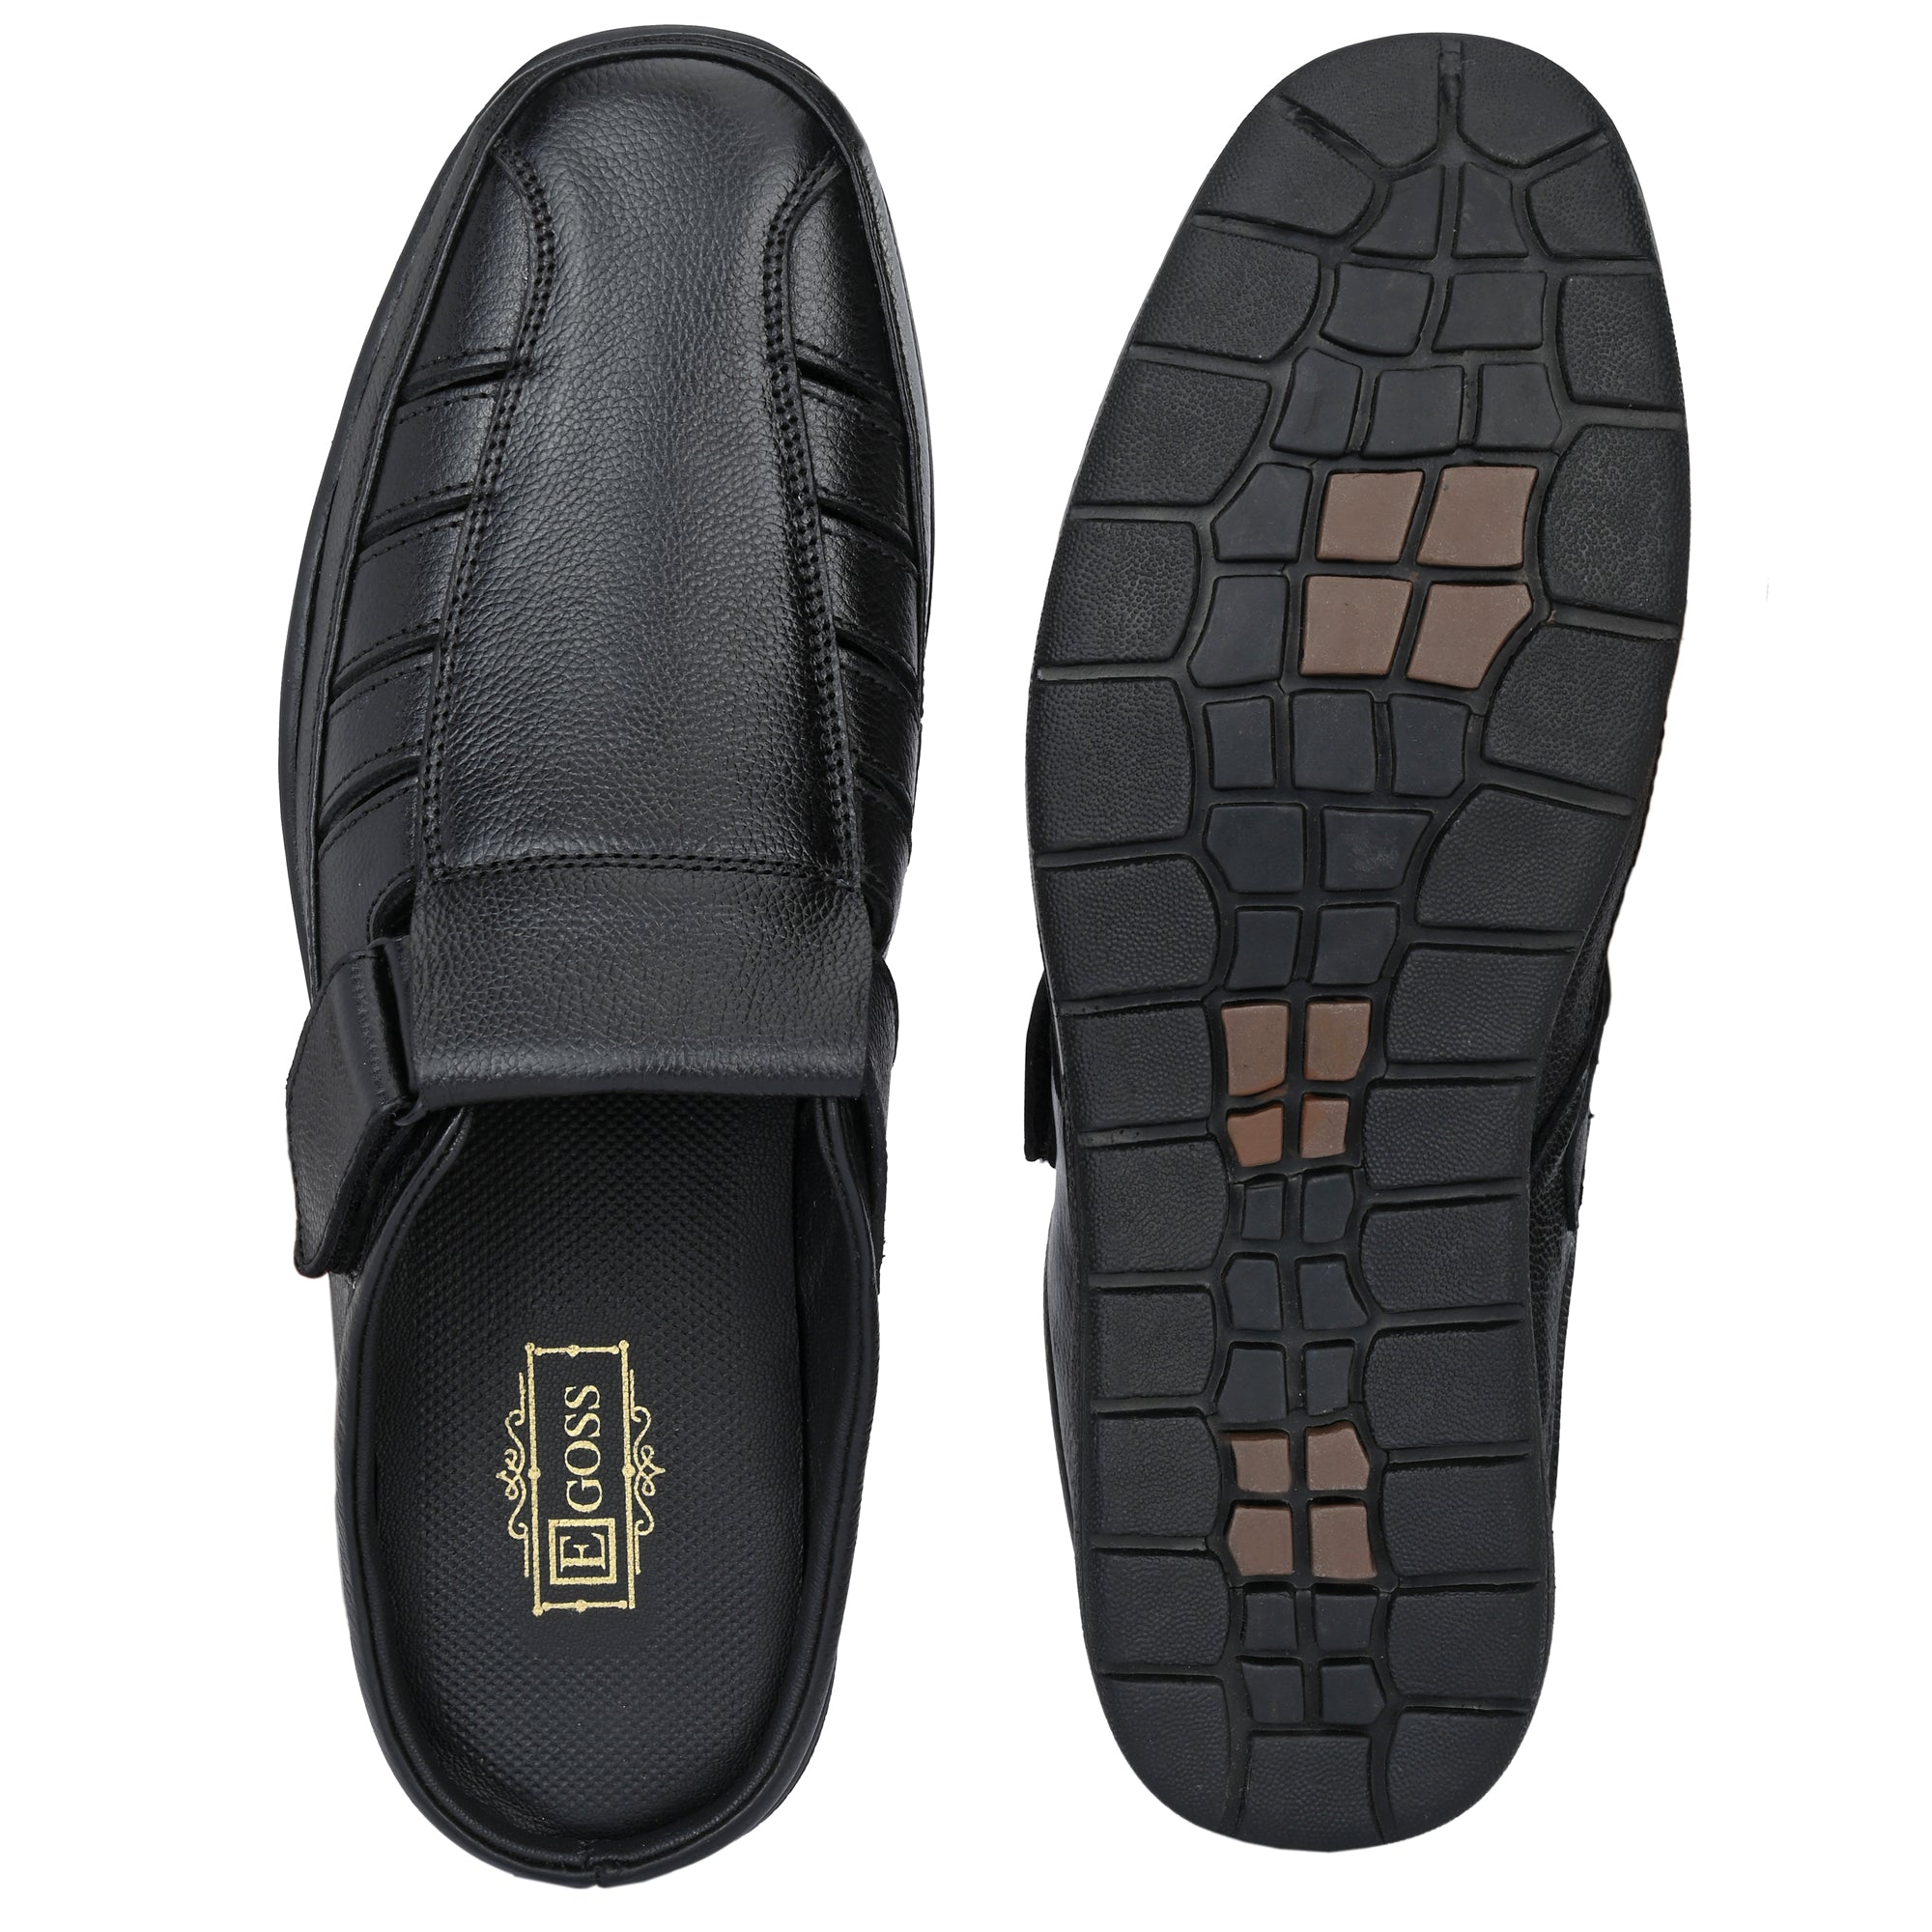 Egoss Slip-On Sandals For Men